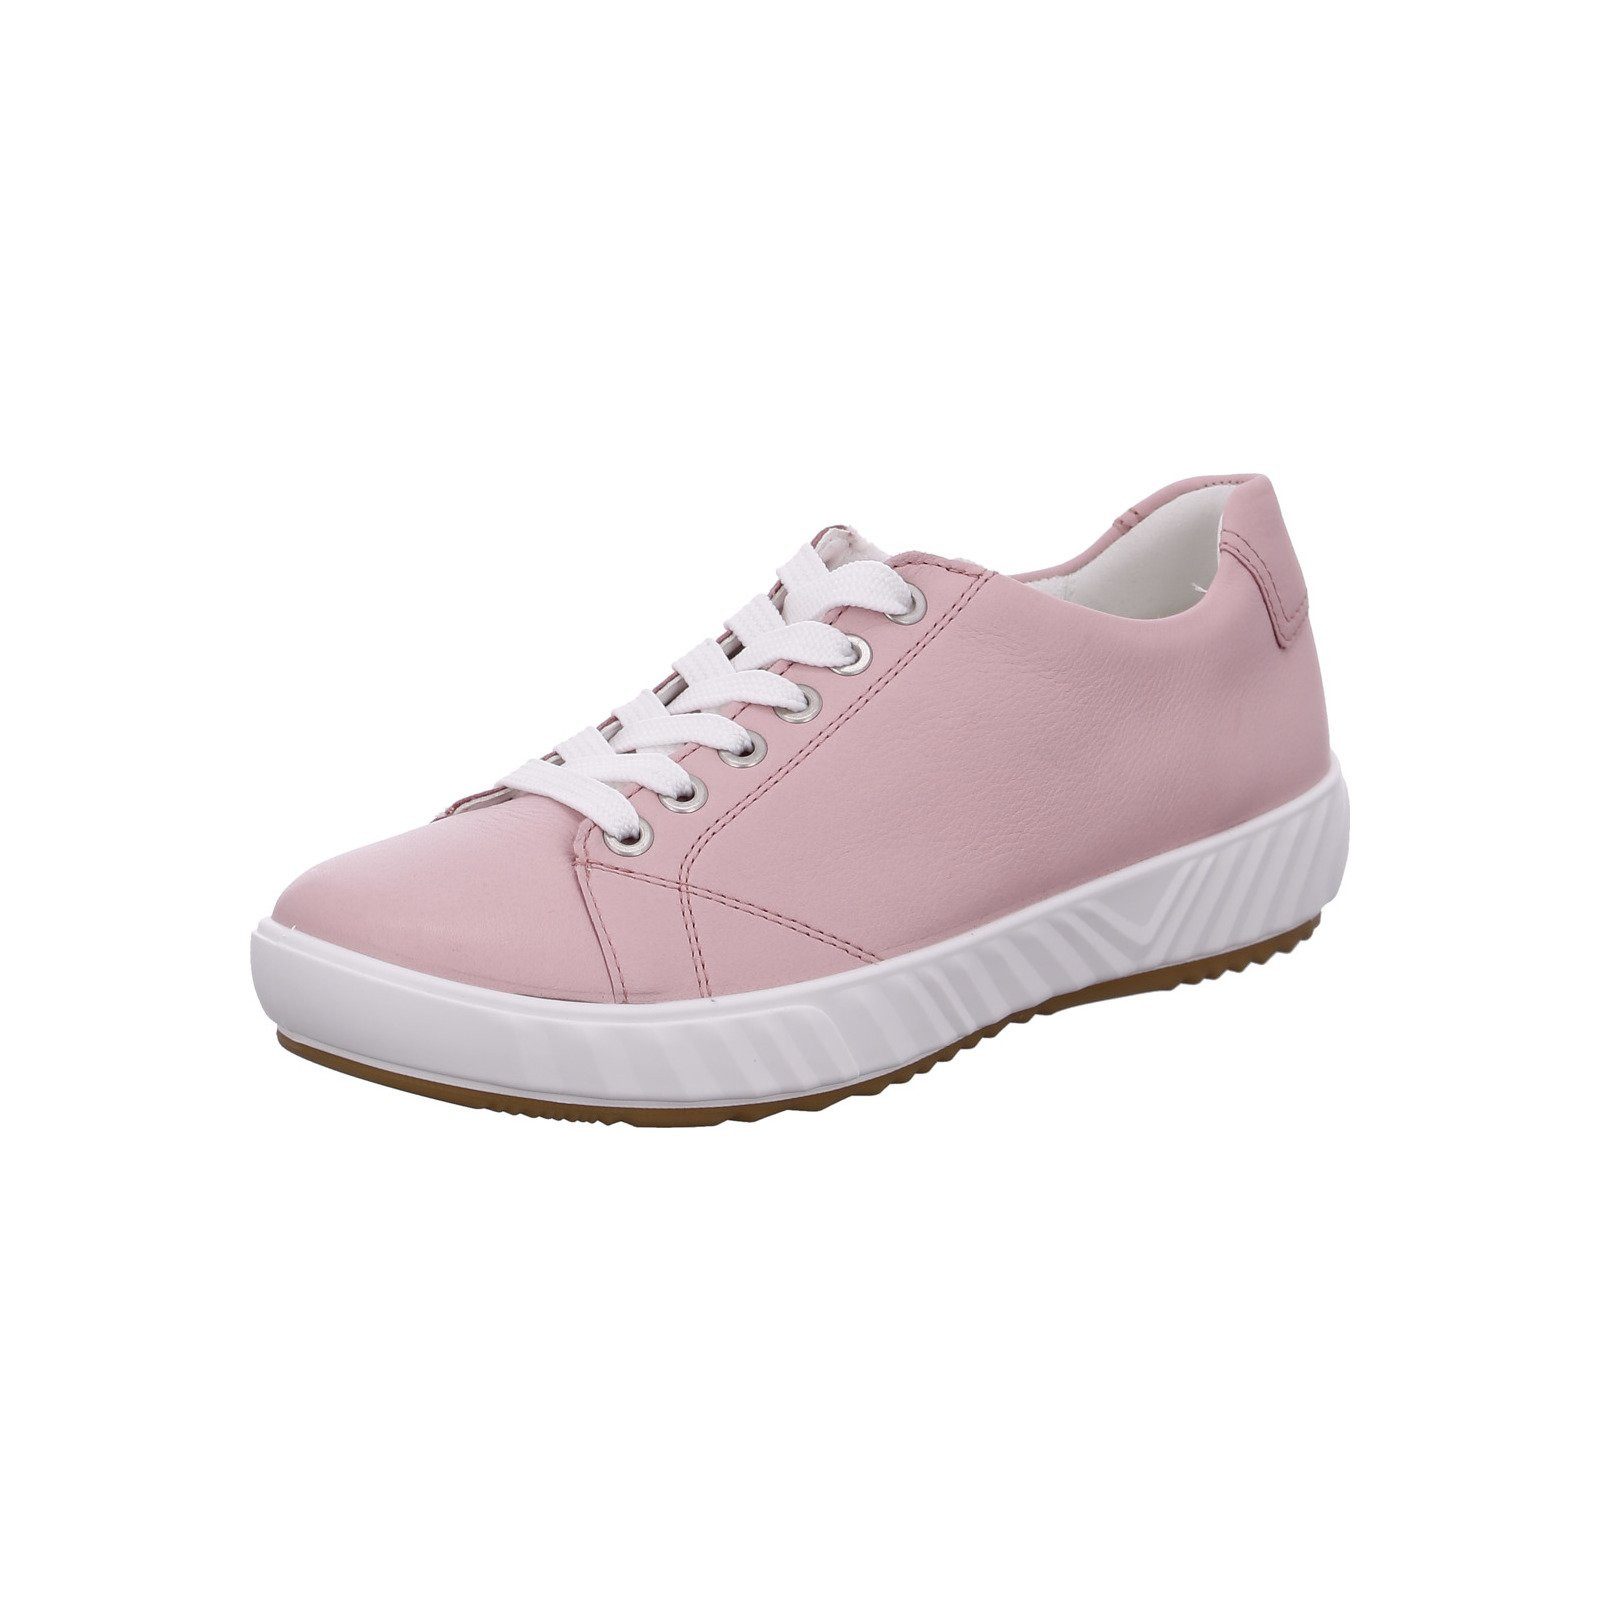 Ara Avio - Damen Schuhe Schnürschuh Sneaker Glattleder rosa